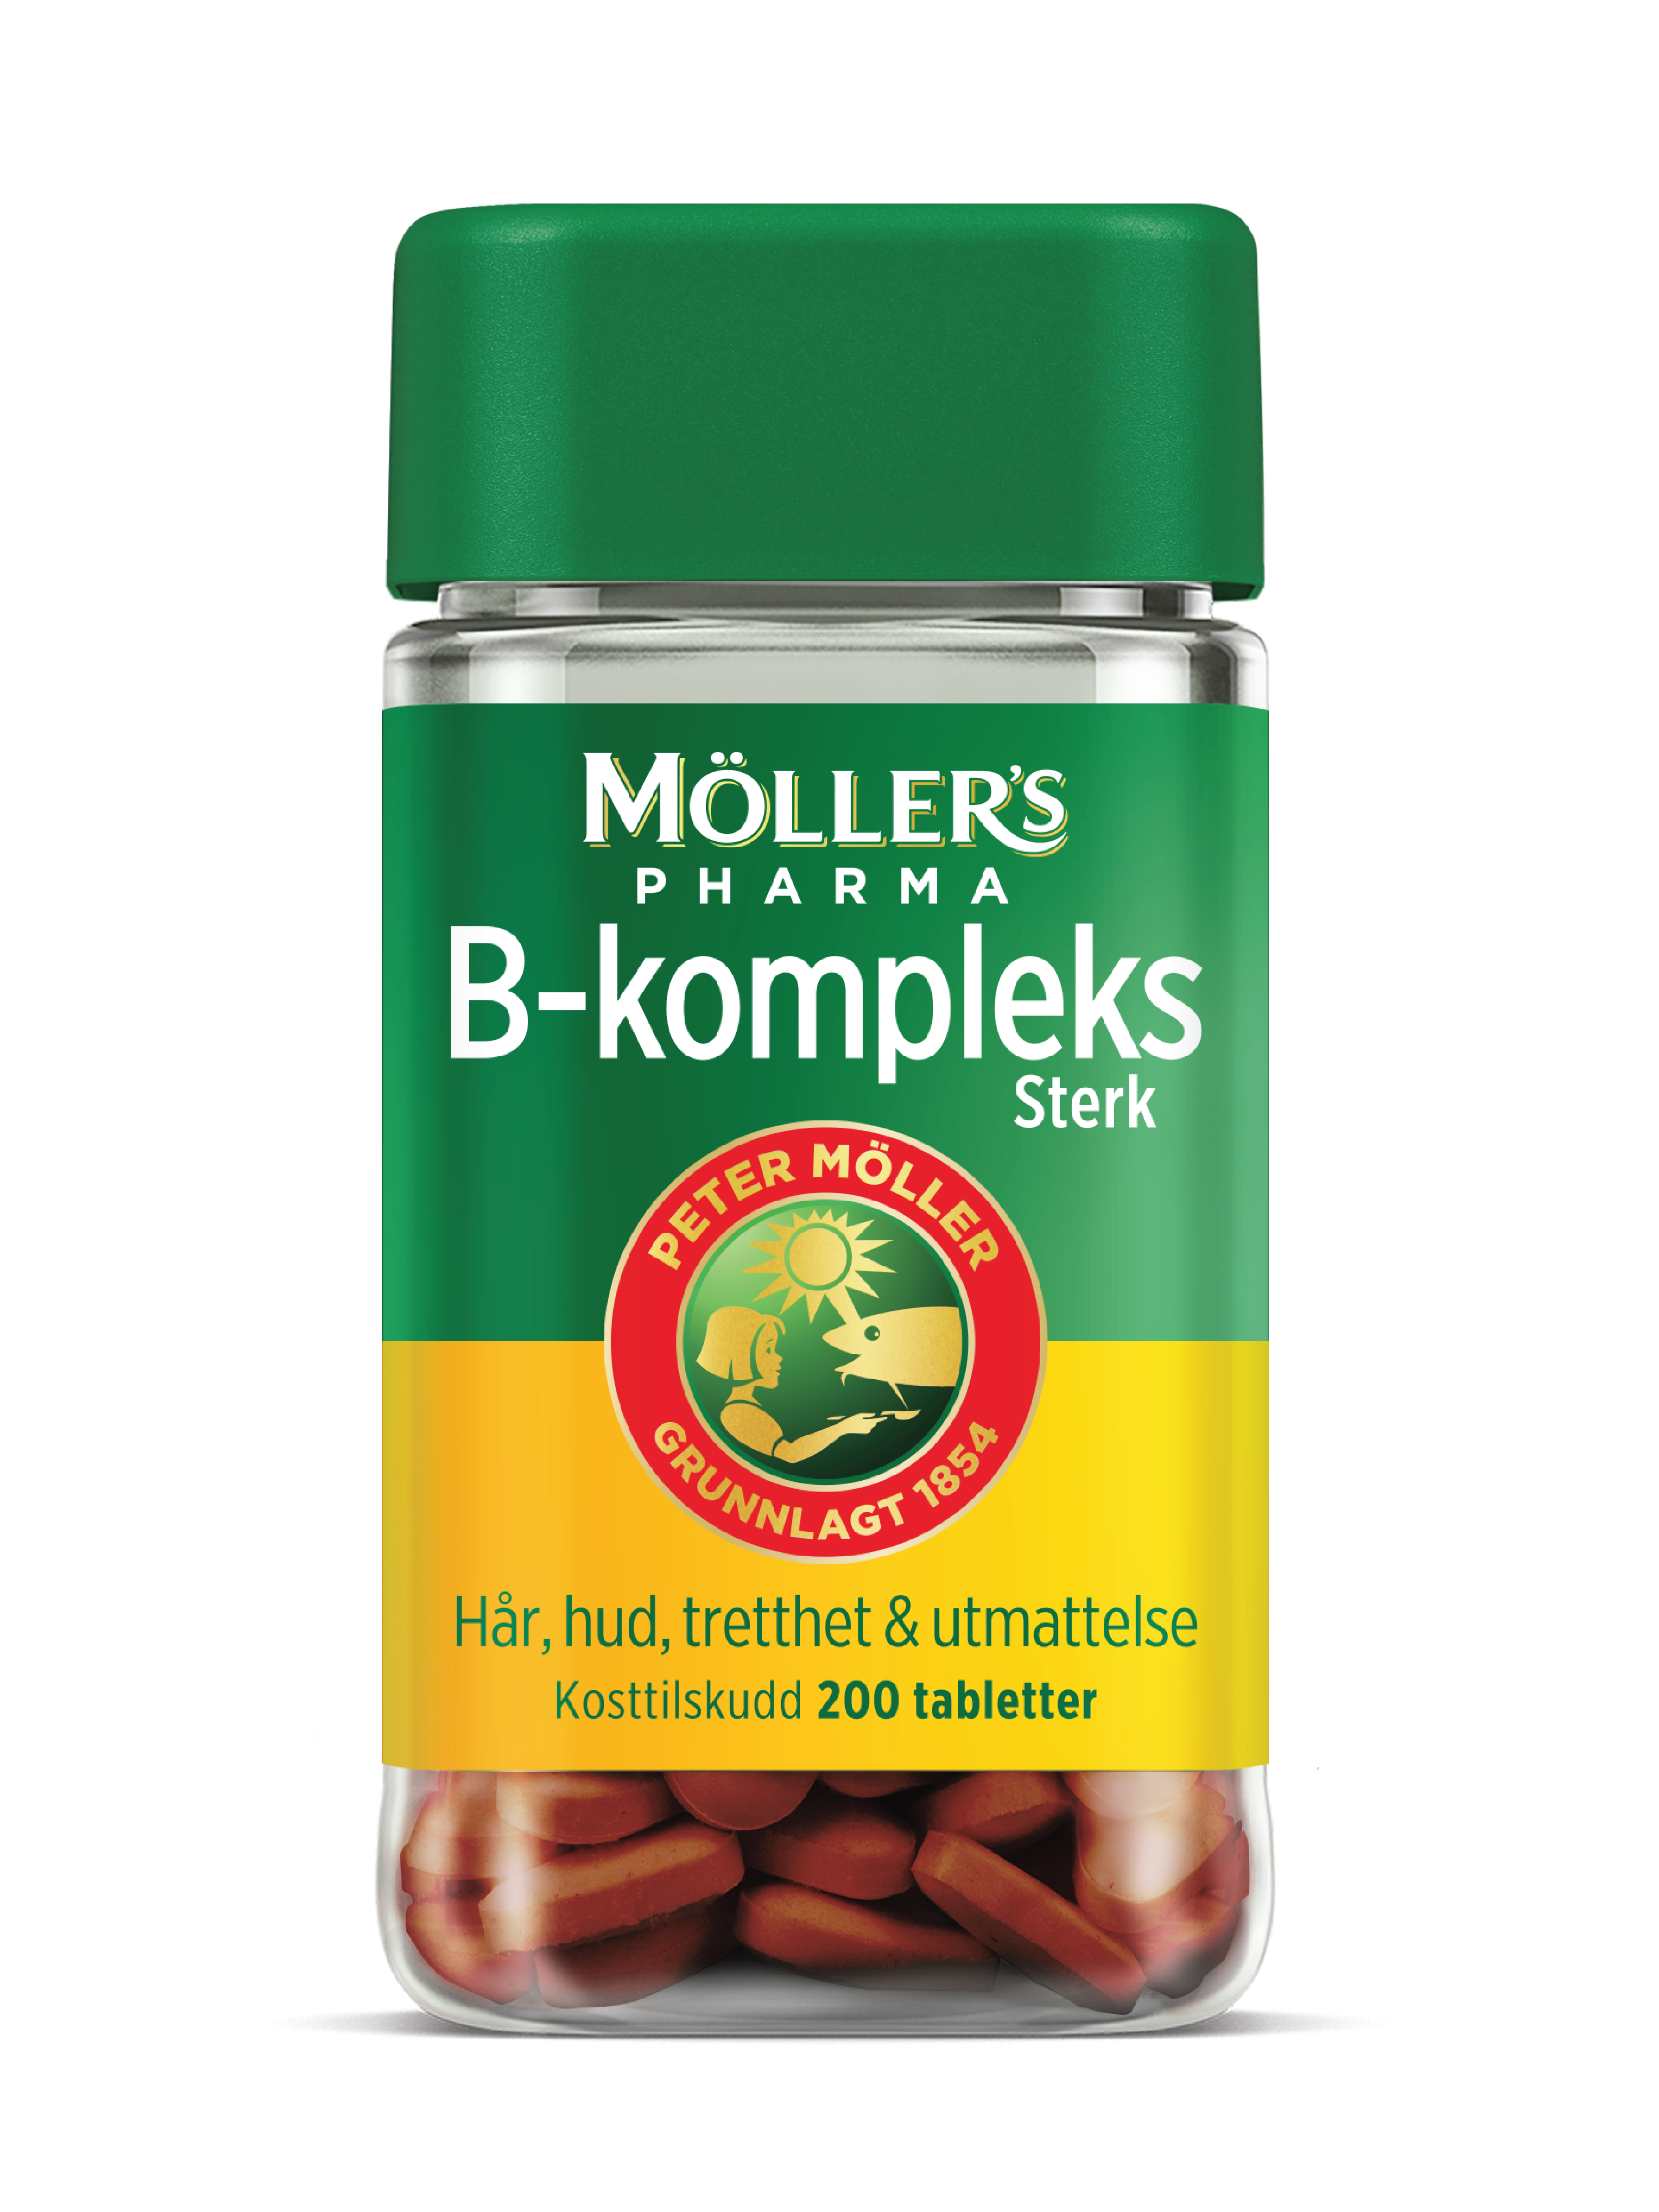 Möller's Pharma B-kompleks sterk tabletter, 200 stk.